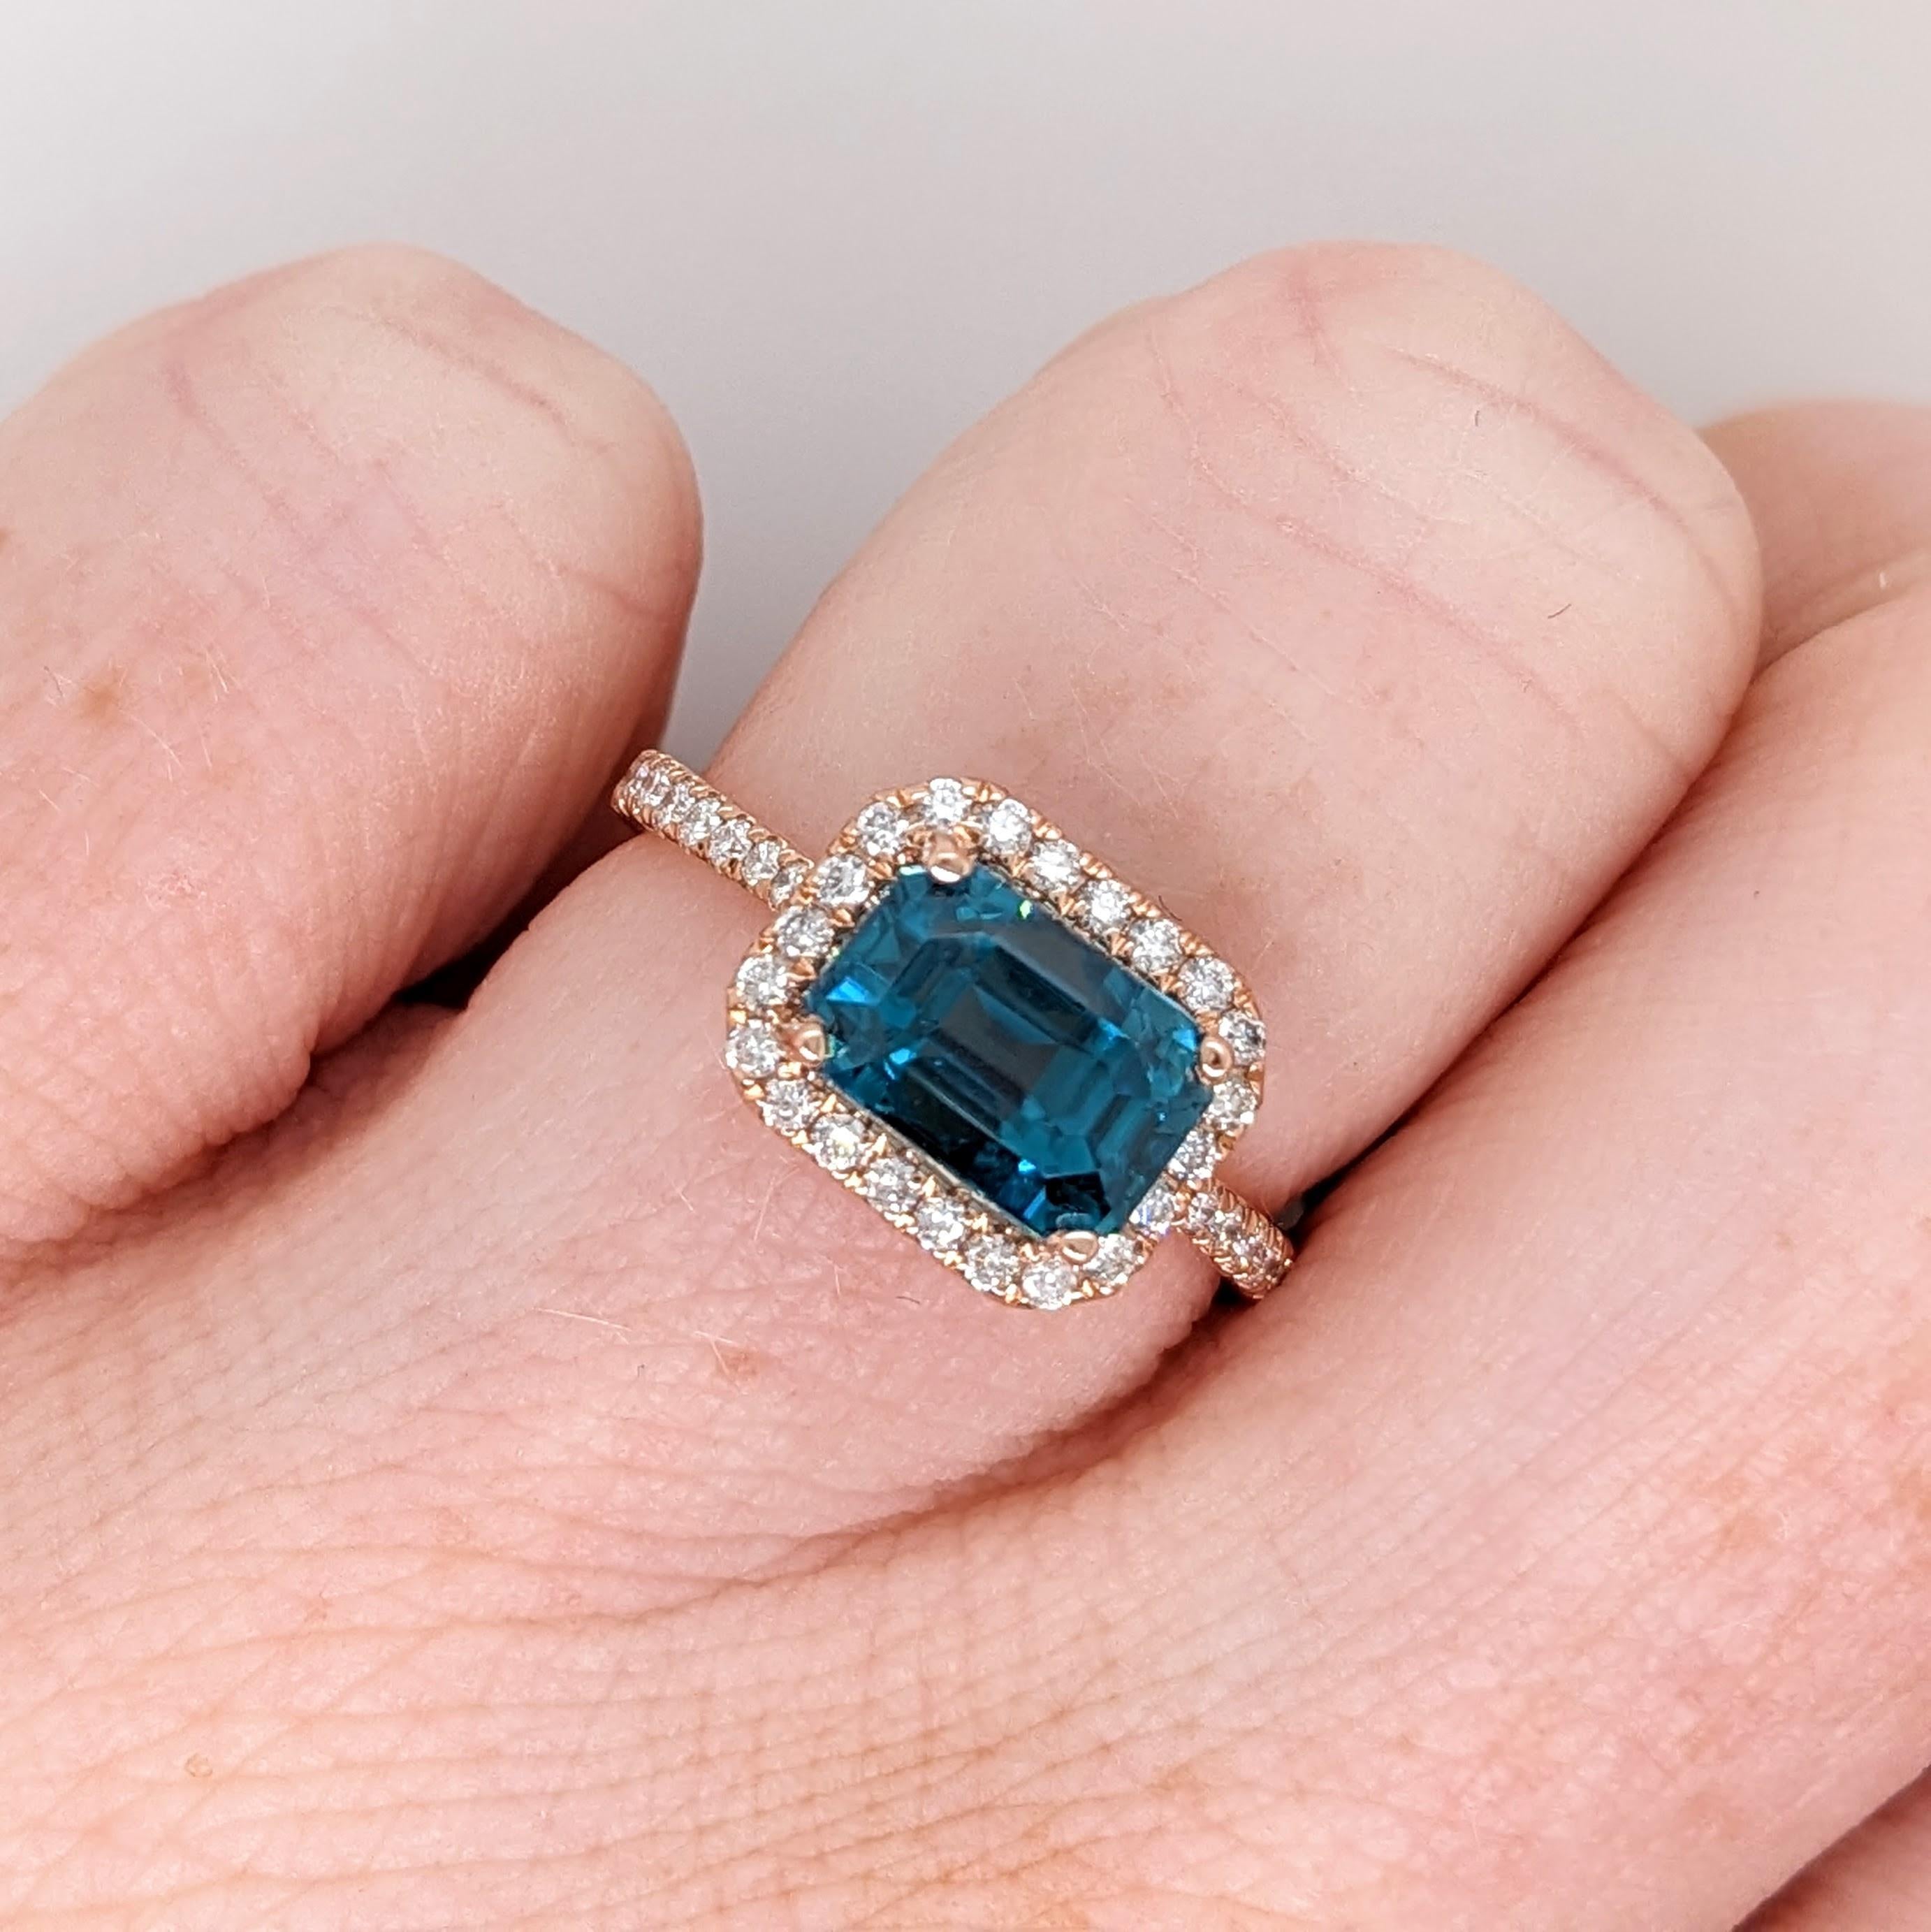 Beanspruchen Sie diesen bezaubernden natürlichen blauen Zirkon für sich oder Ihre Lieben! Ein Meisterwerk der Natur in einem unserer beliebtesten NNJ Ringdesigns aus massivem 14K Gold mit natürlichen Diamanten. Ein wunderschöner Ring für eine